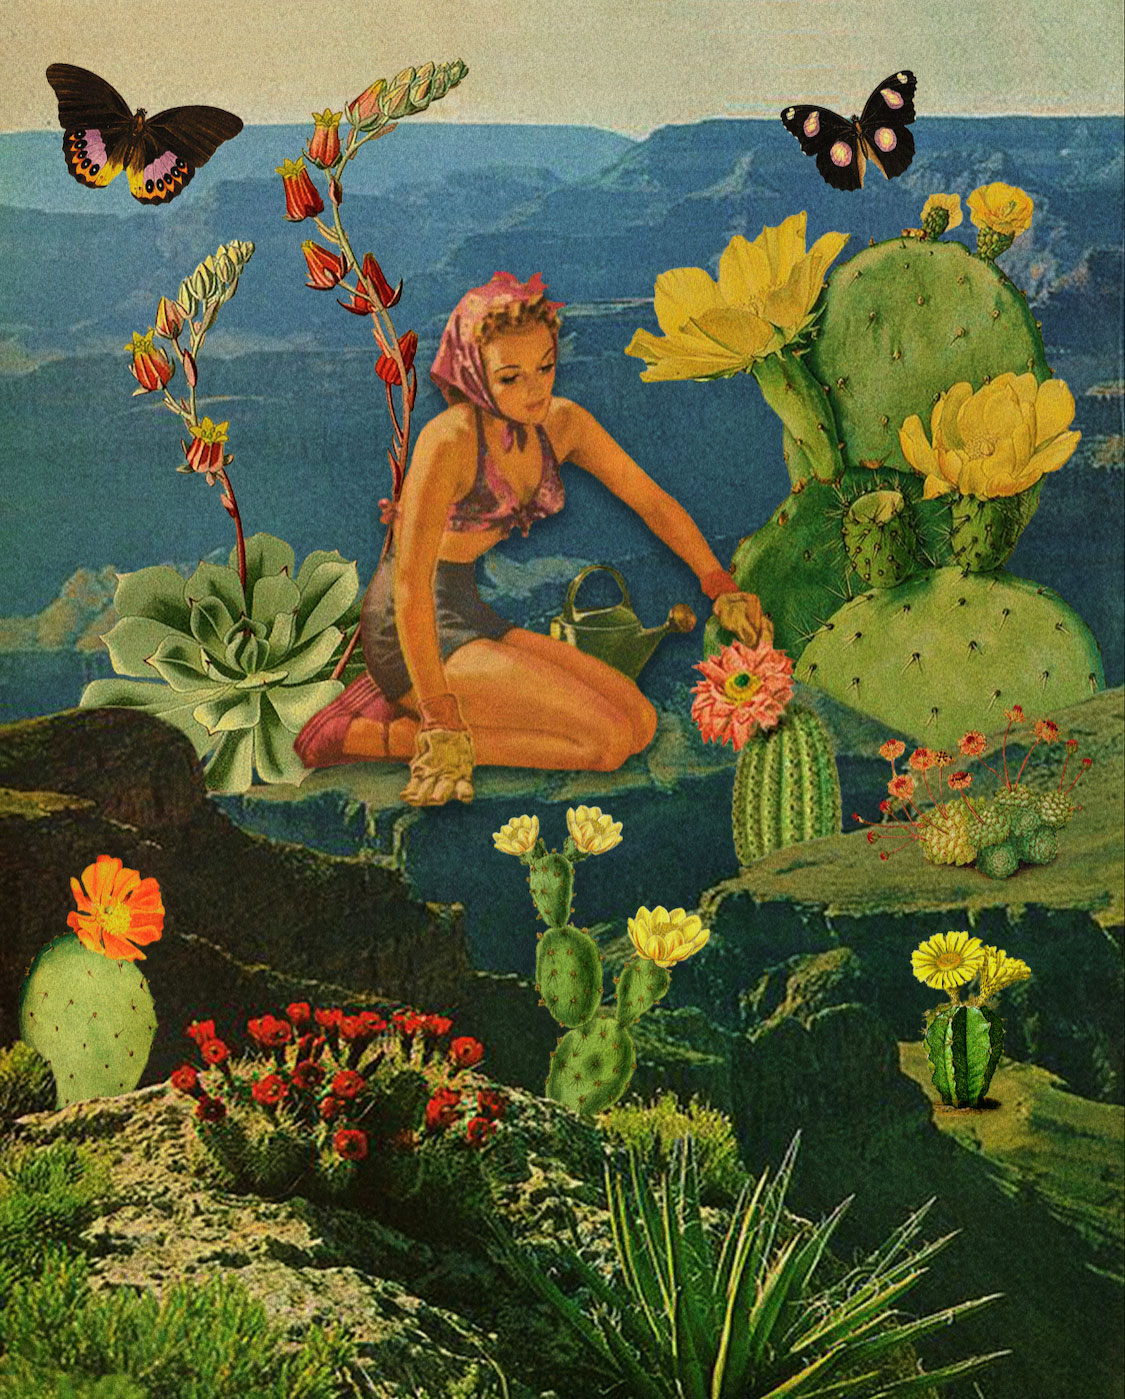 Girl gardening flowering cactus with butterflies